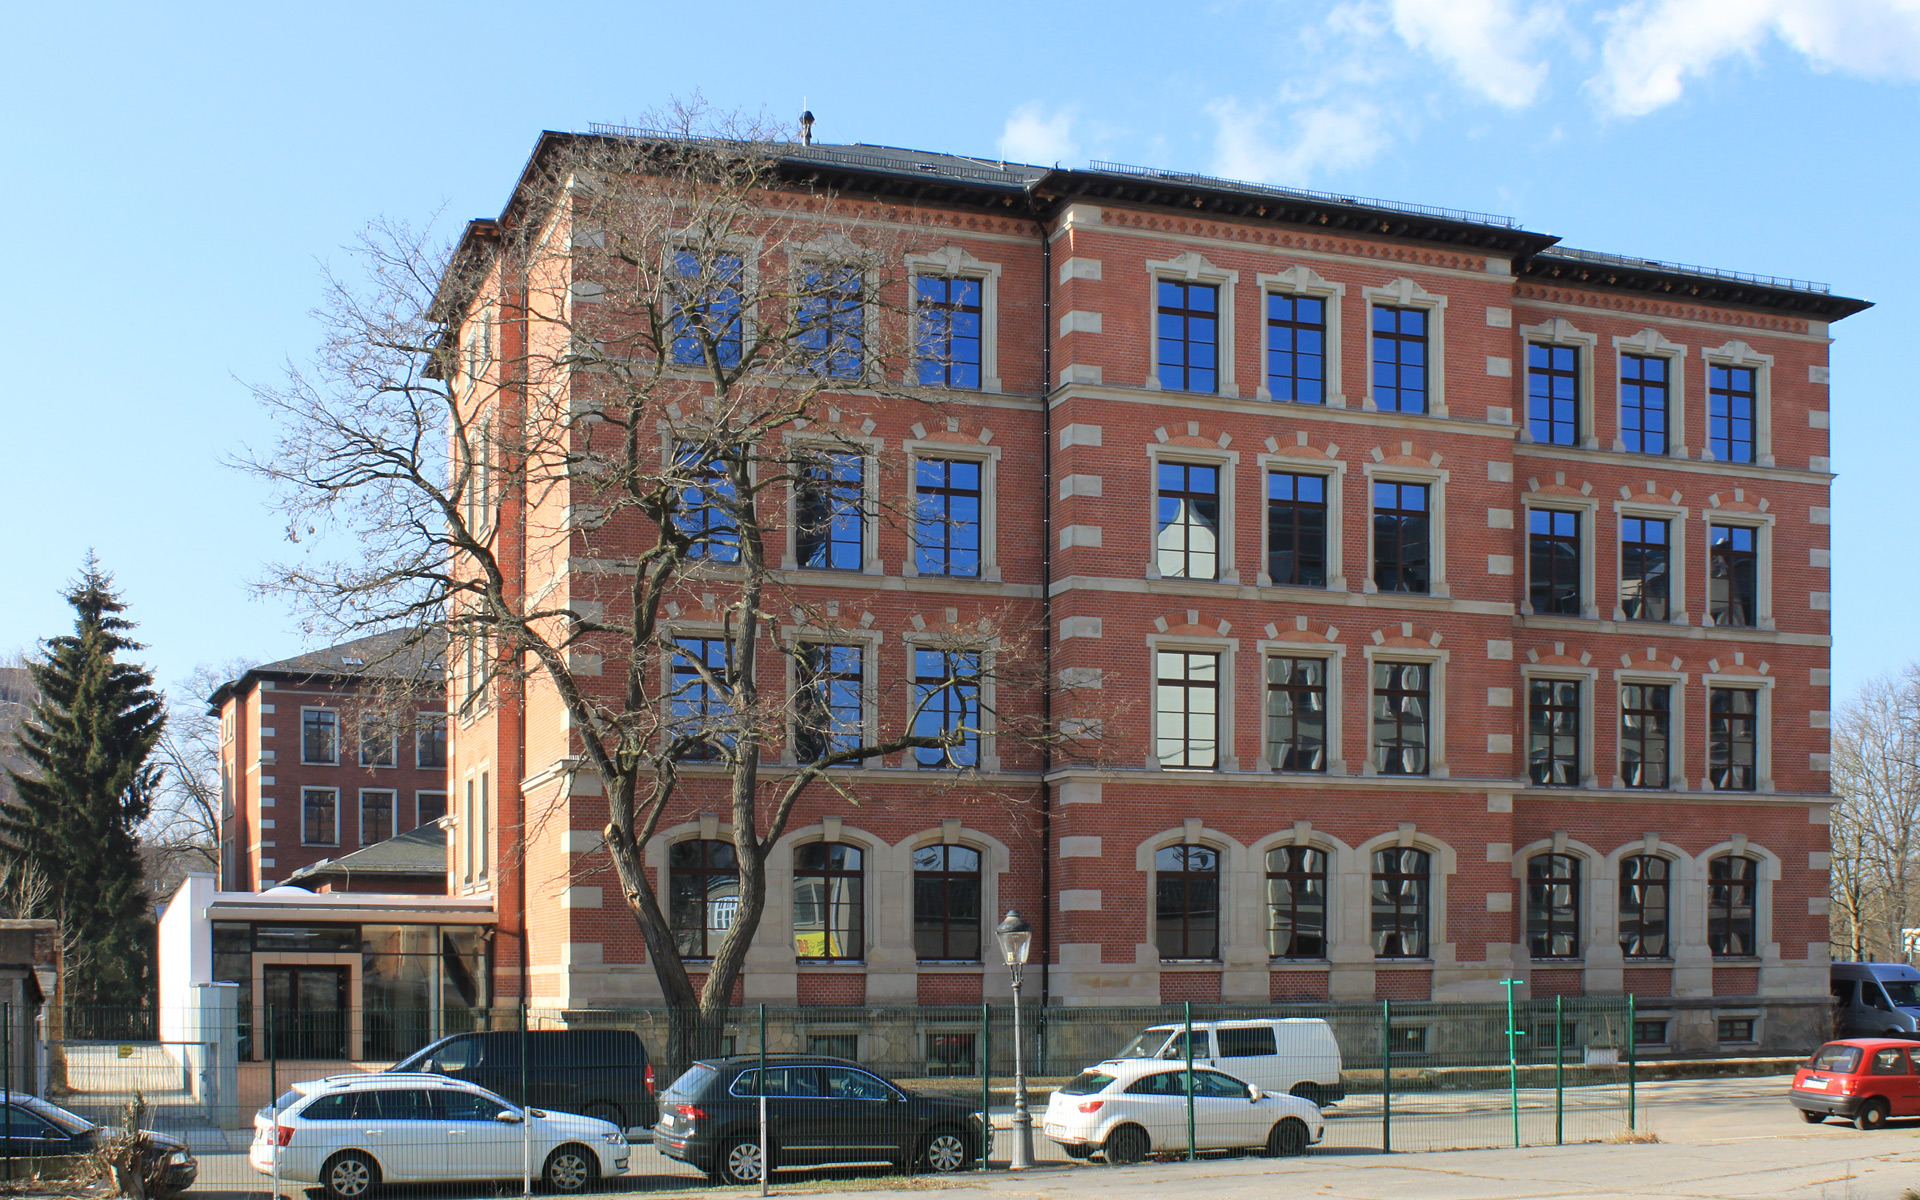 Neubau / Sanierung Josephinen-Oberschule Chemnitz